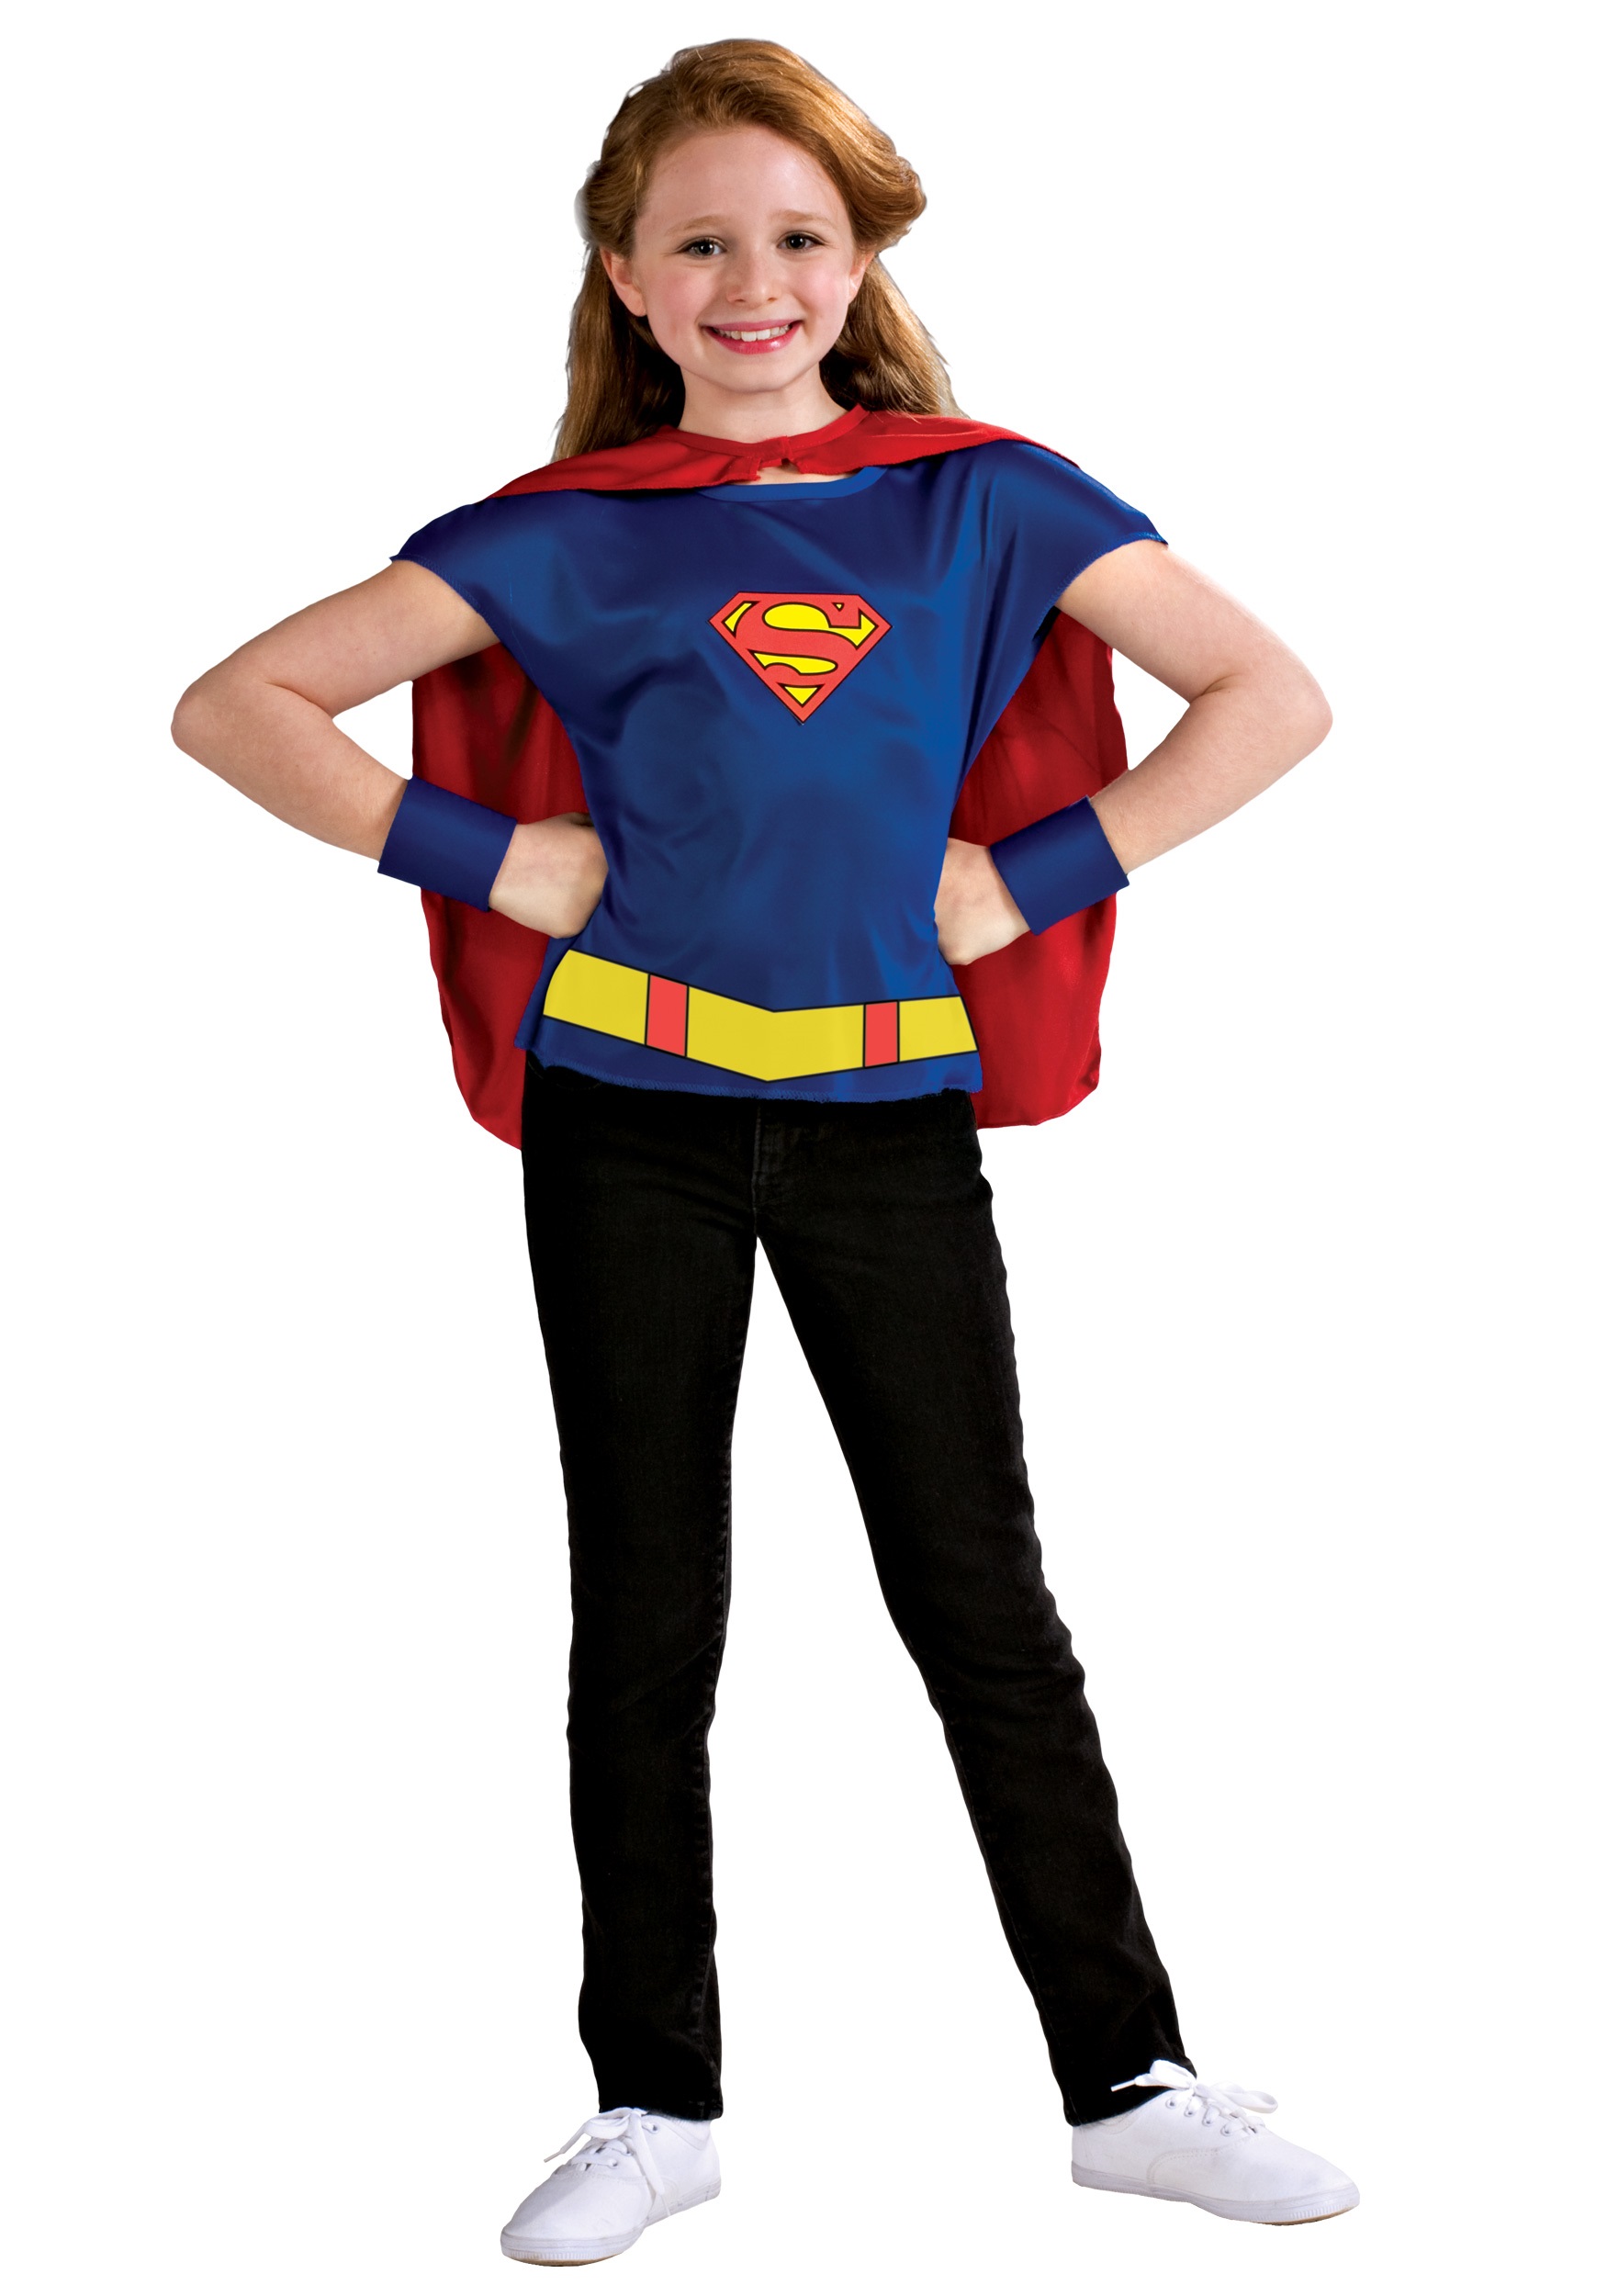 Supergirl Costume-Super Girl Costume-Costume for Girls-Comics Costume ...